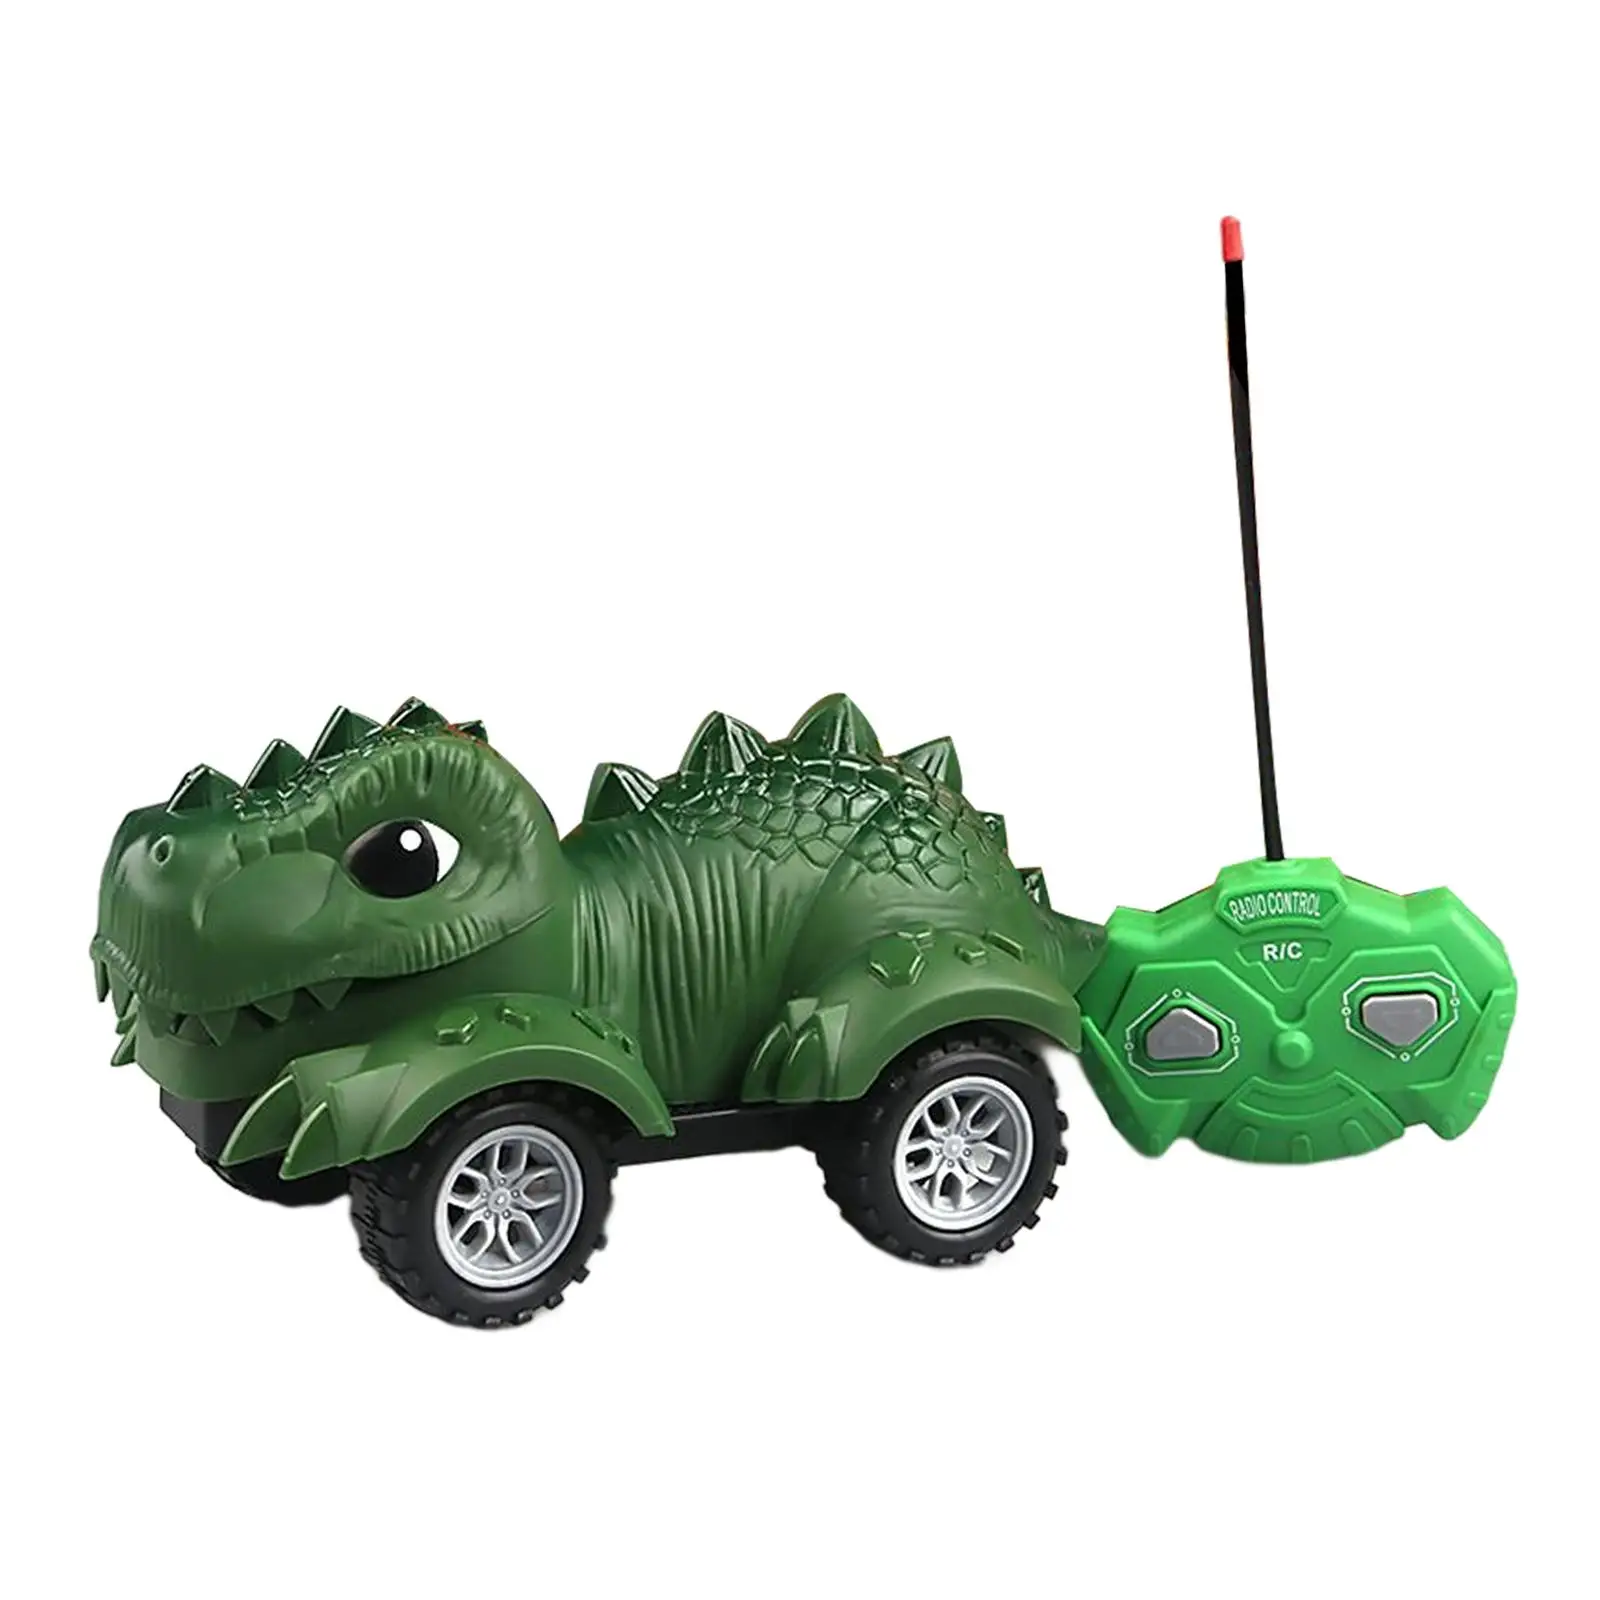 Creative Dinosaur Monster Trucks RC Race for Children Boys 3-5